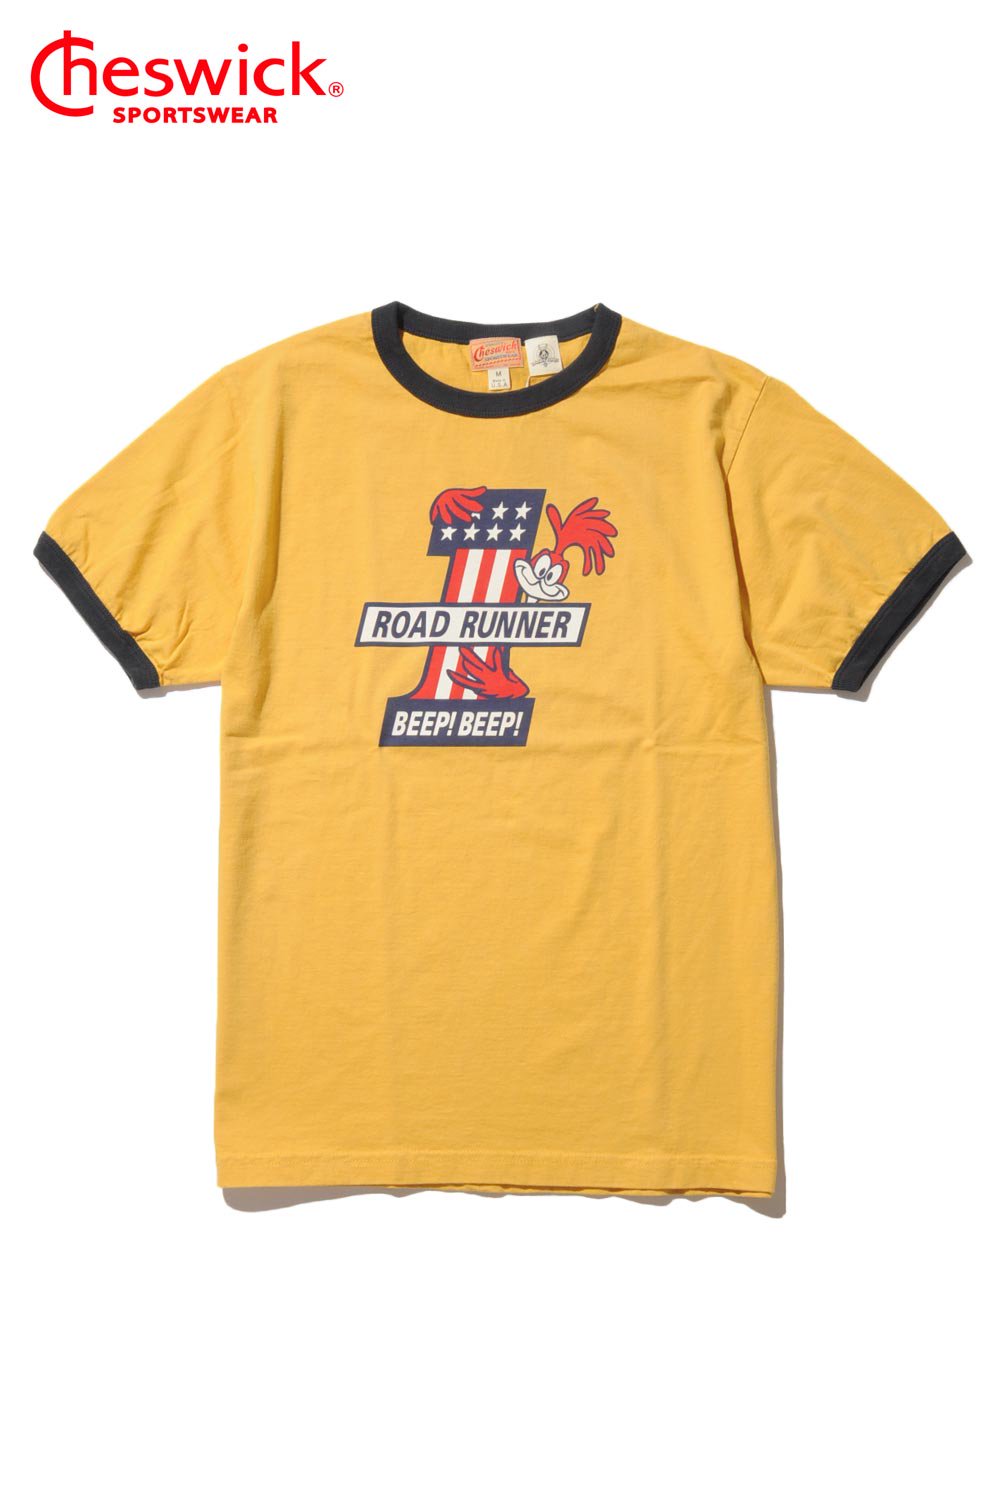 CHESWICK(チェスウィック) リンガーTシャツ ROAD RUNNER T-SHIRTS 